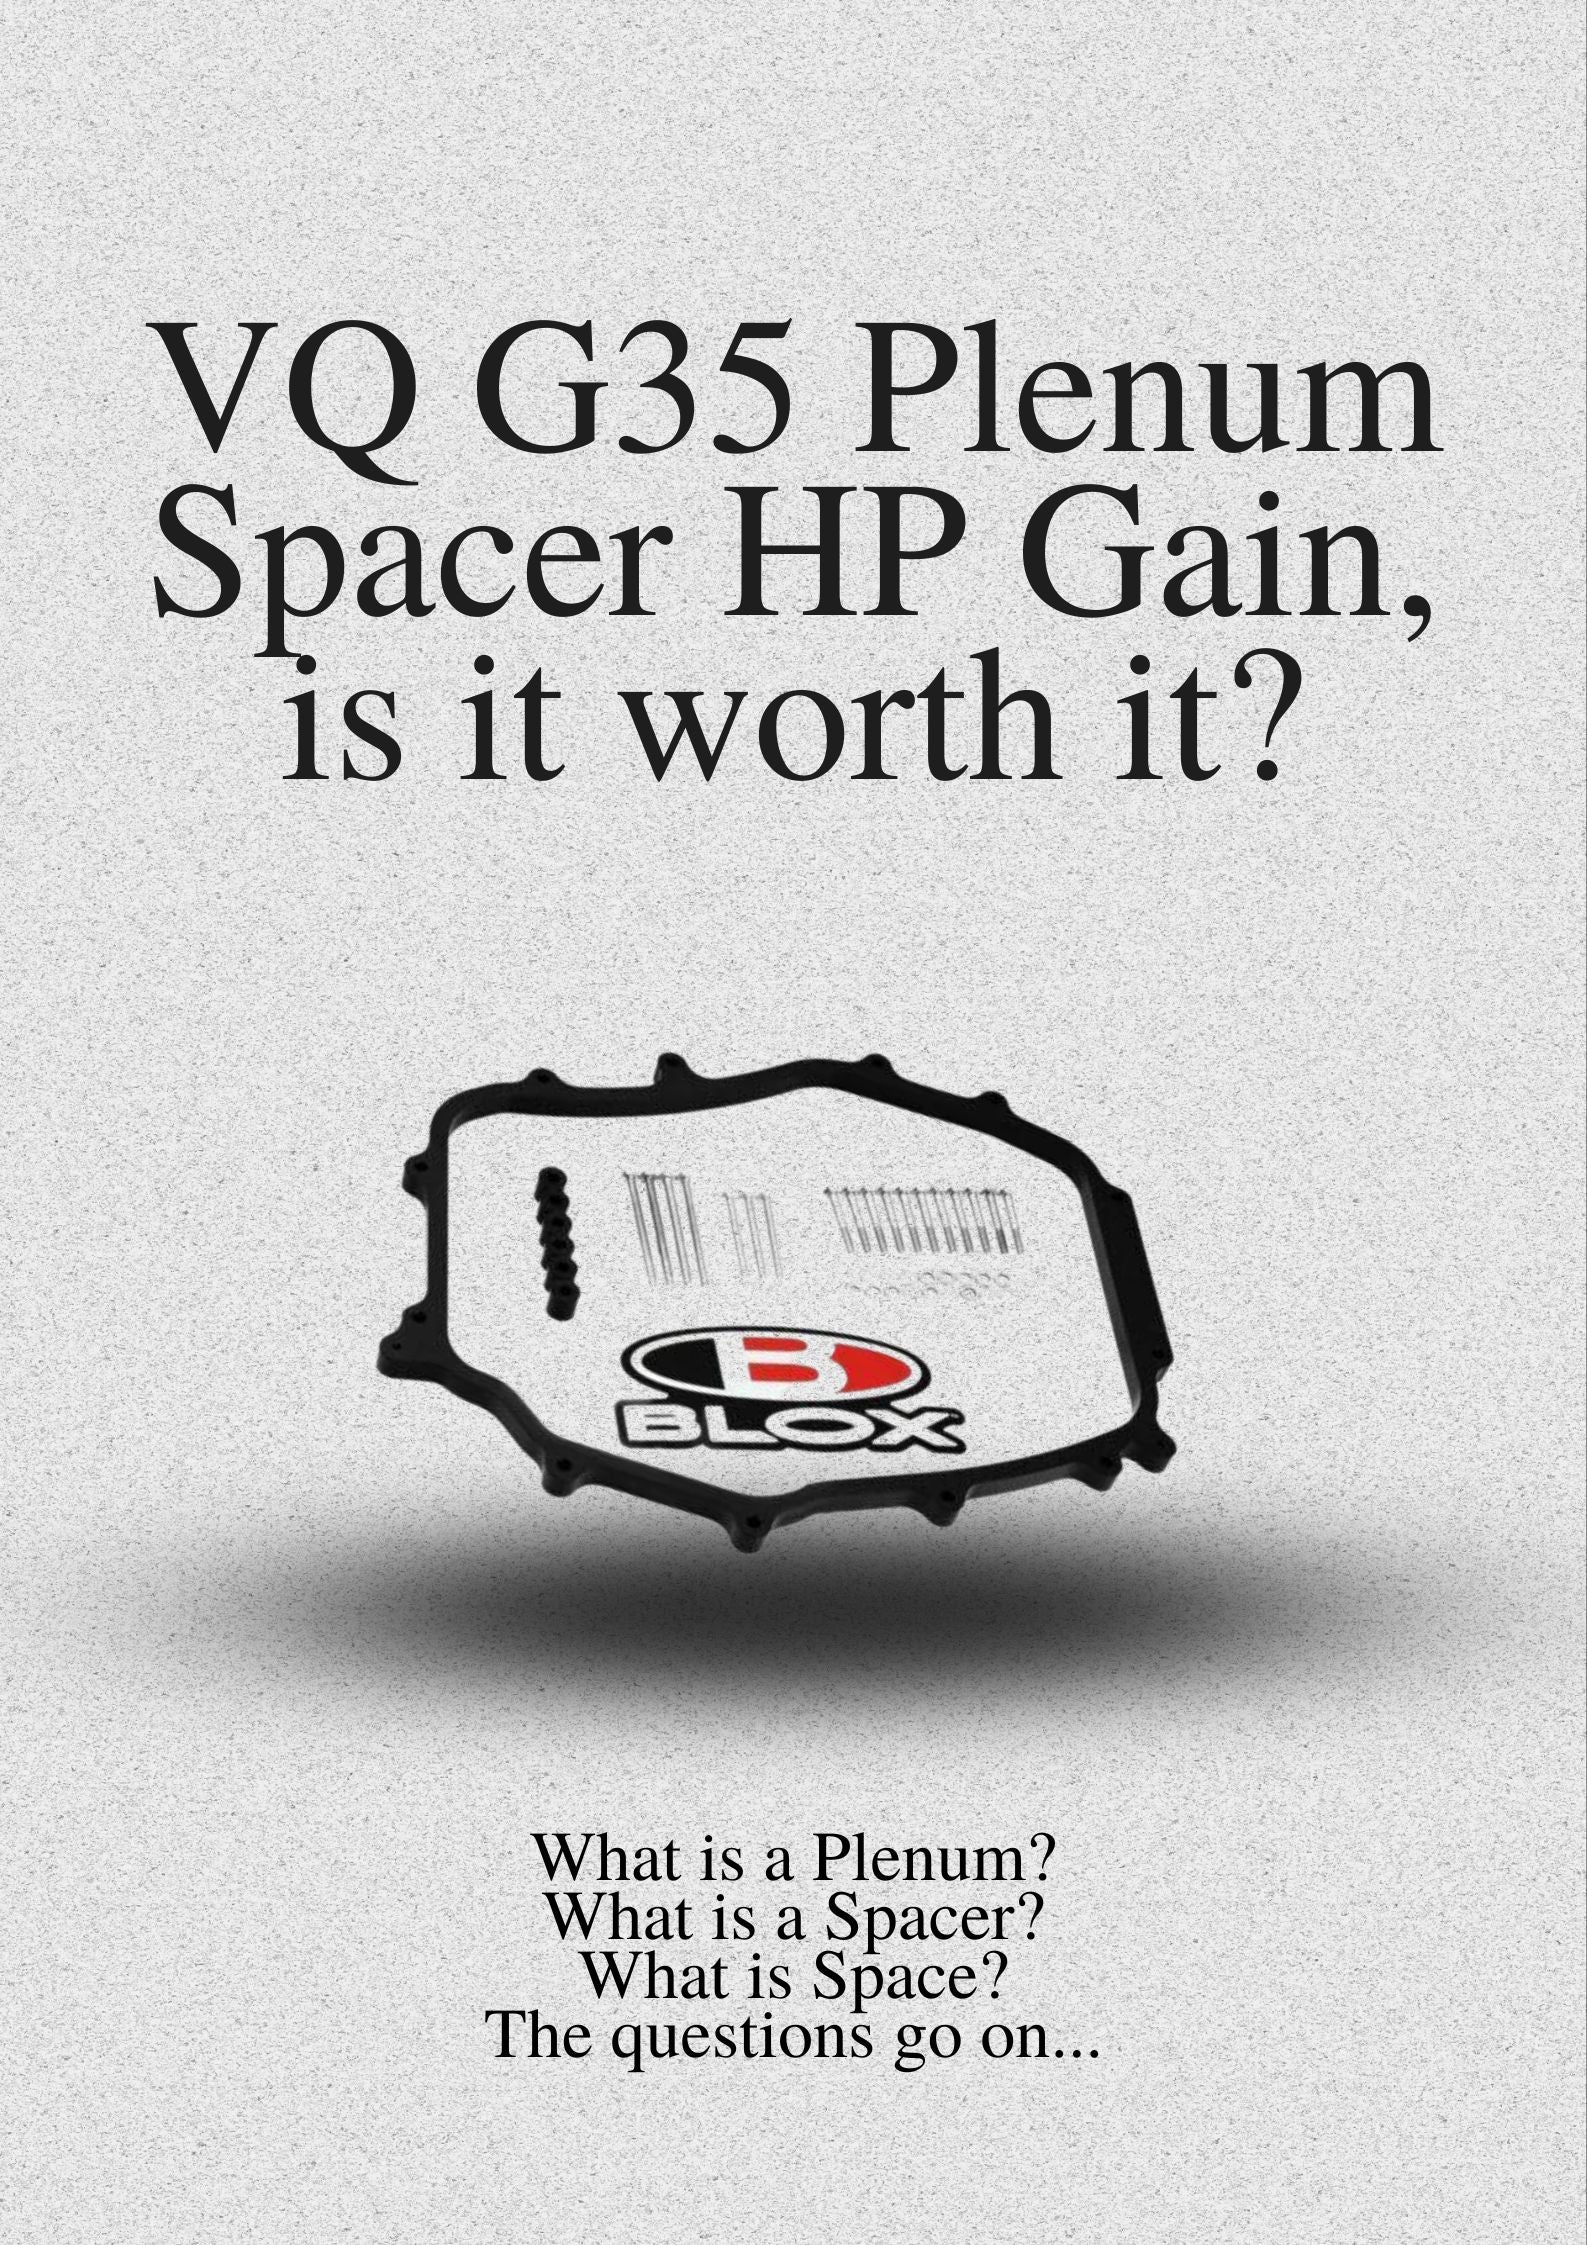 VQ G35 Plenum Spacer HP Gain, is it worth it?